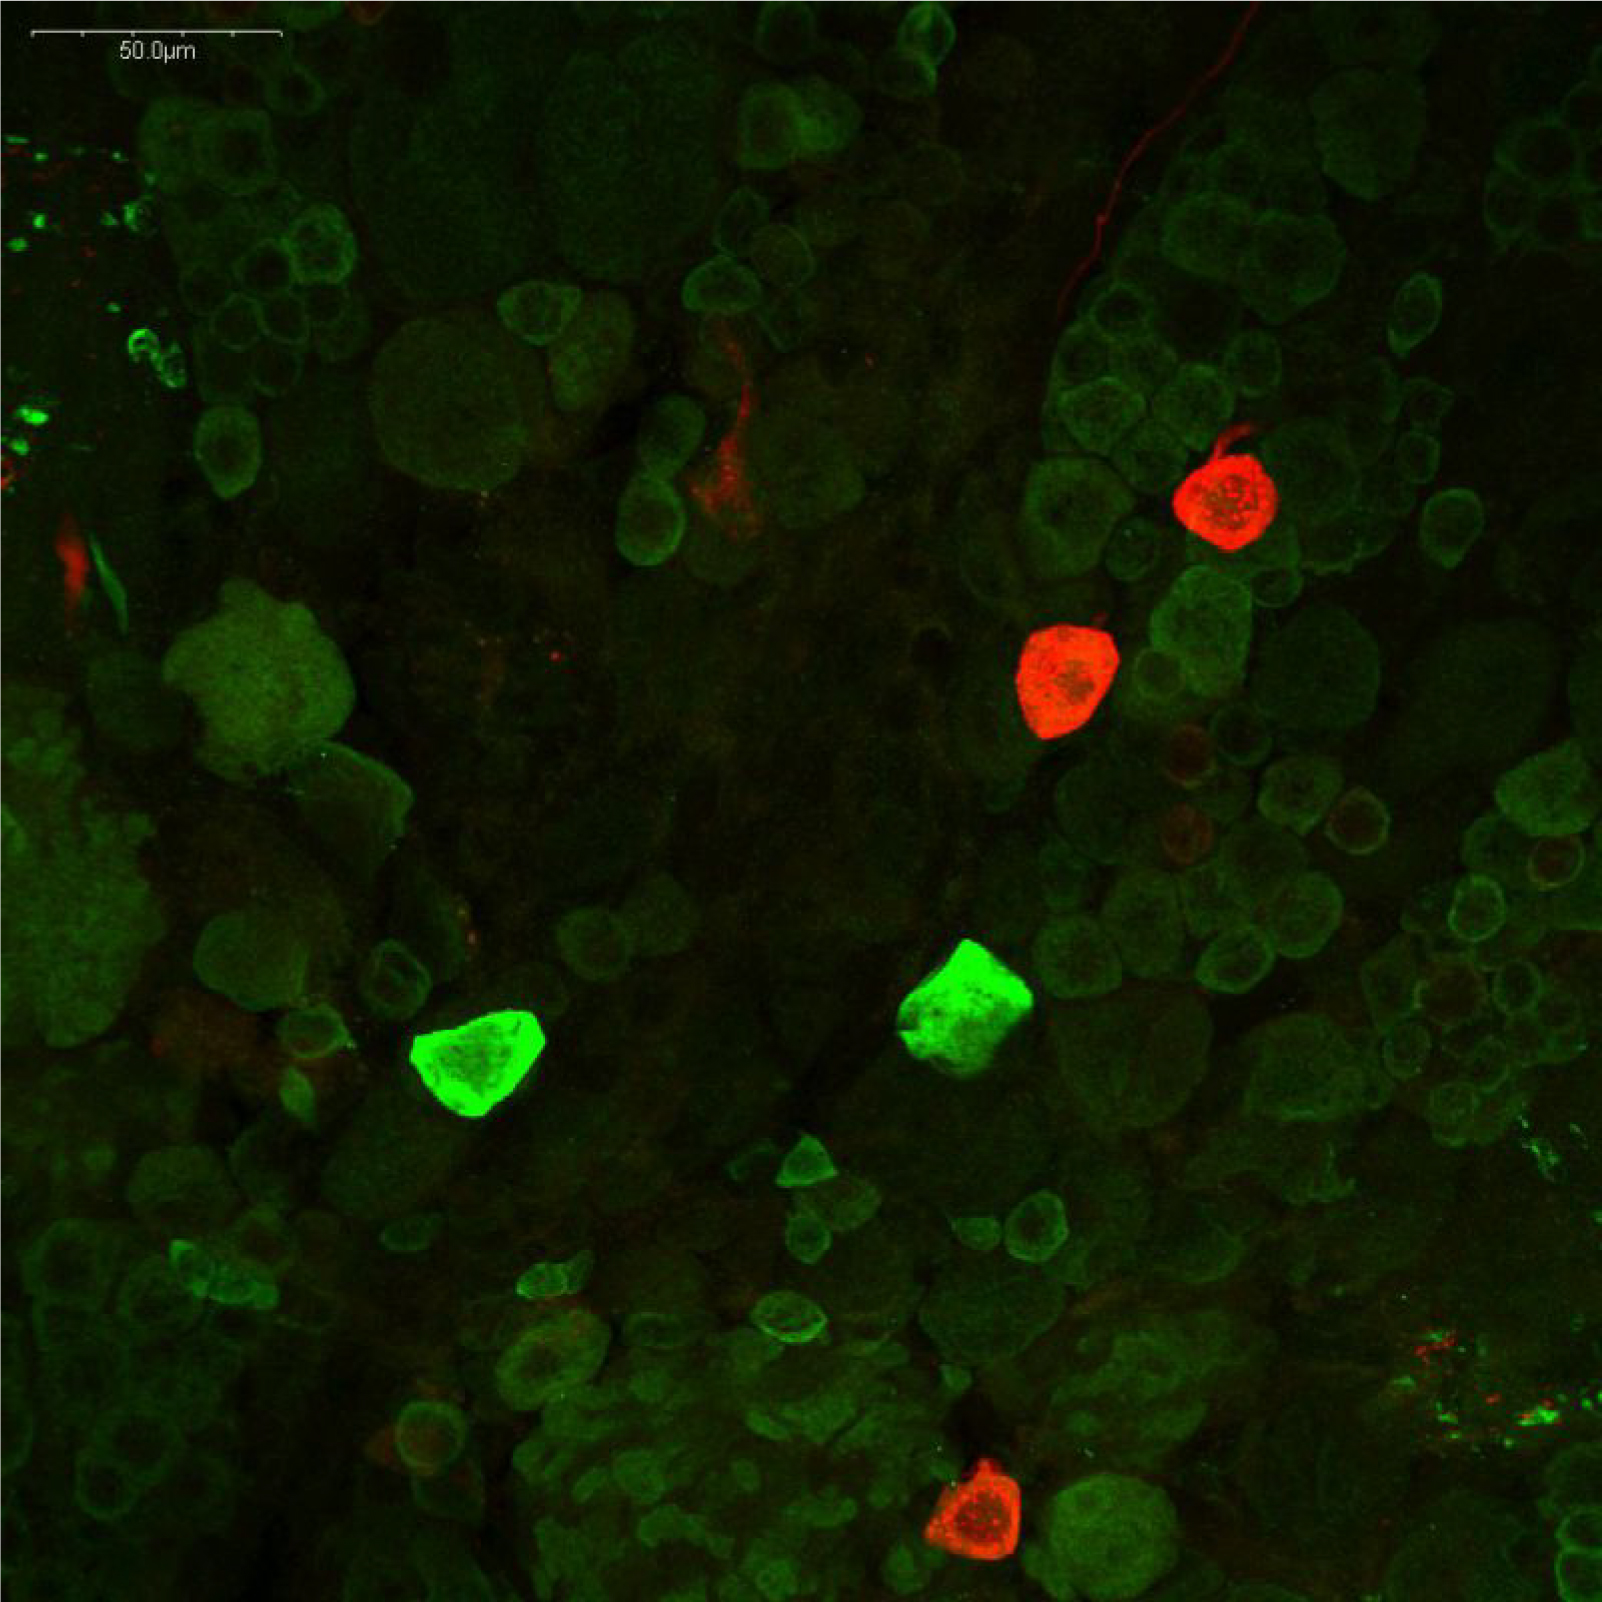 ザリガニ脳のドーパミン作動性およびセロトニン作動性ニューロンの免疫蛍光染色像